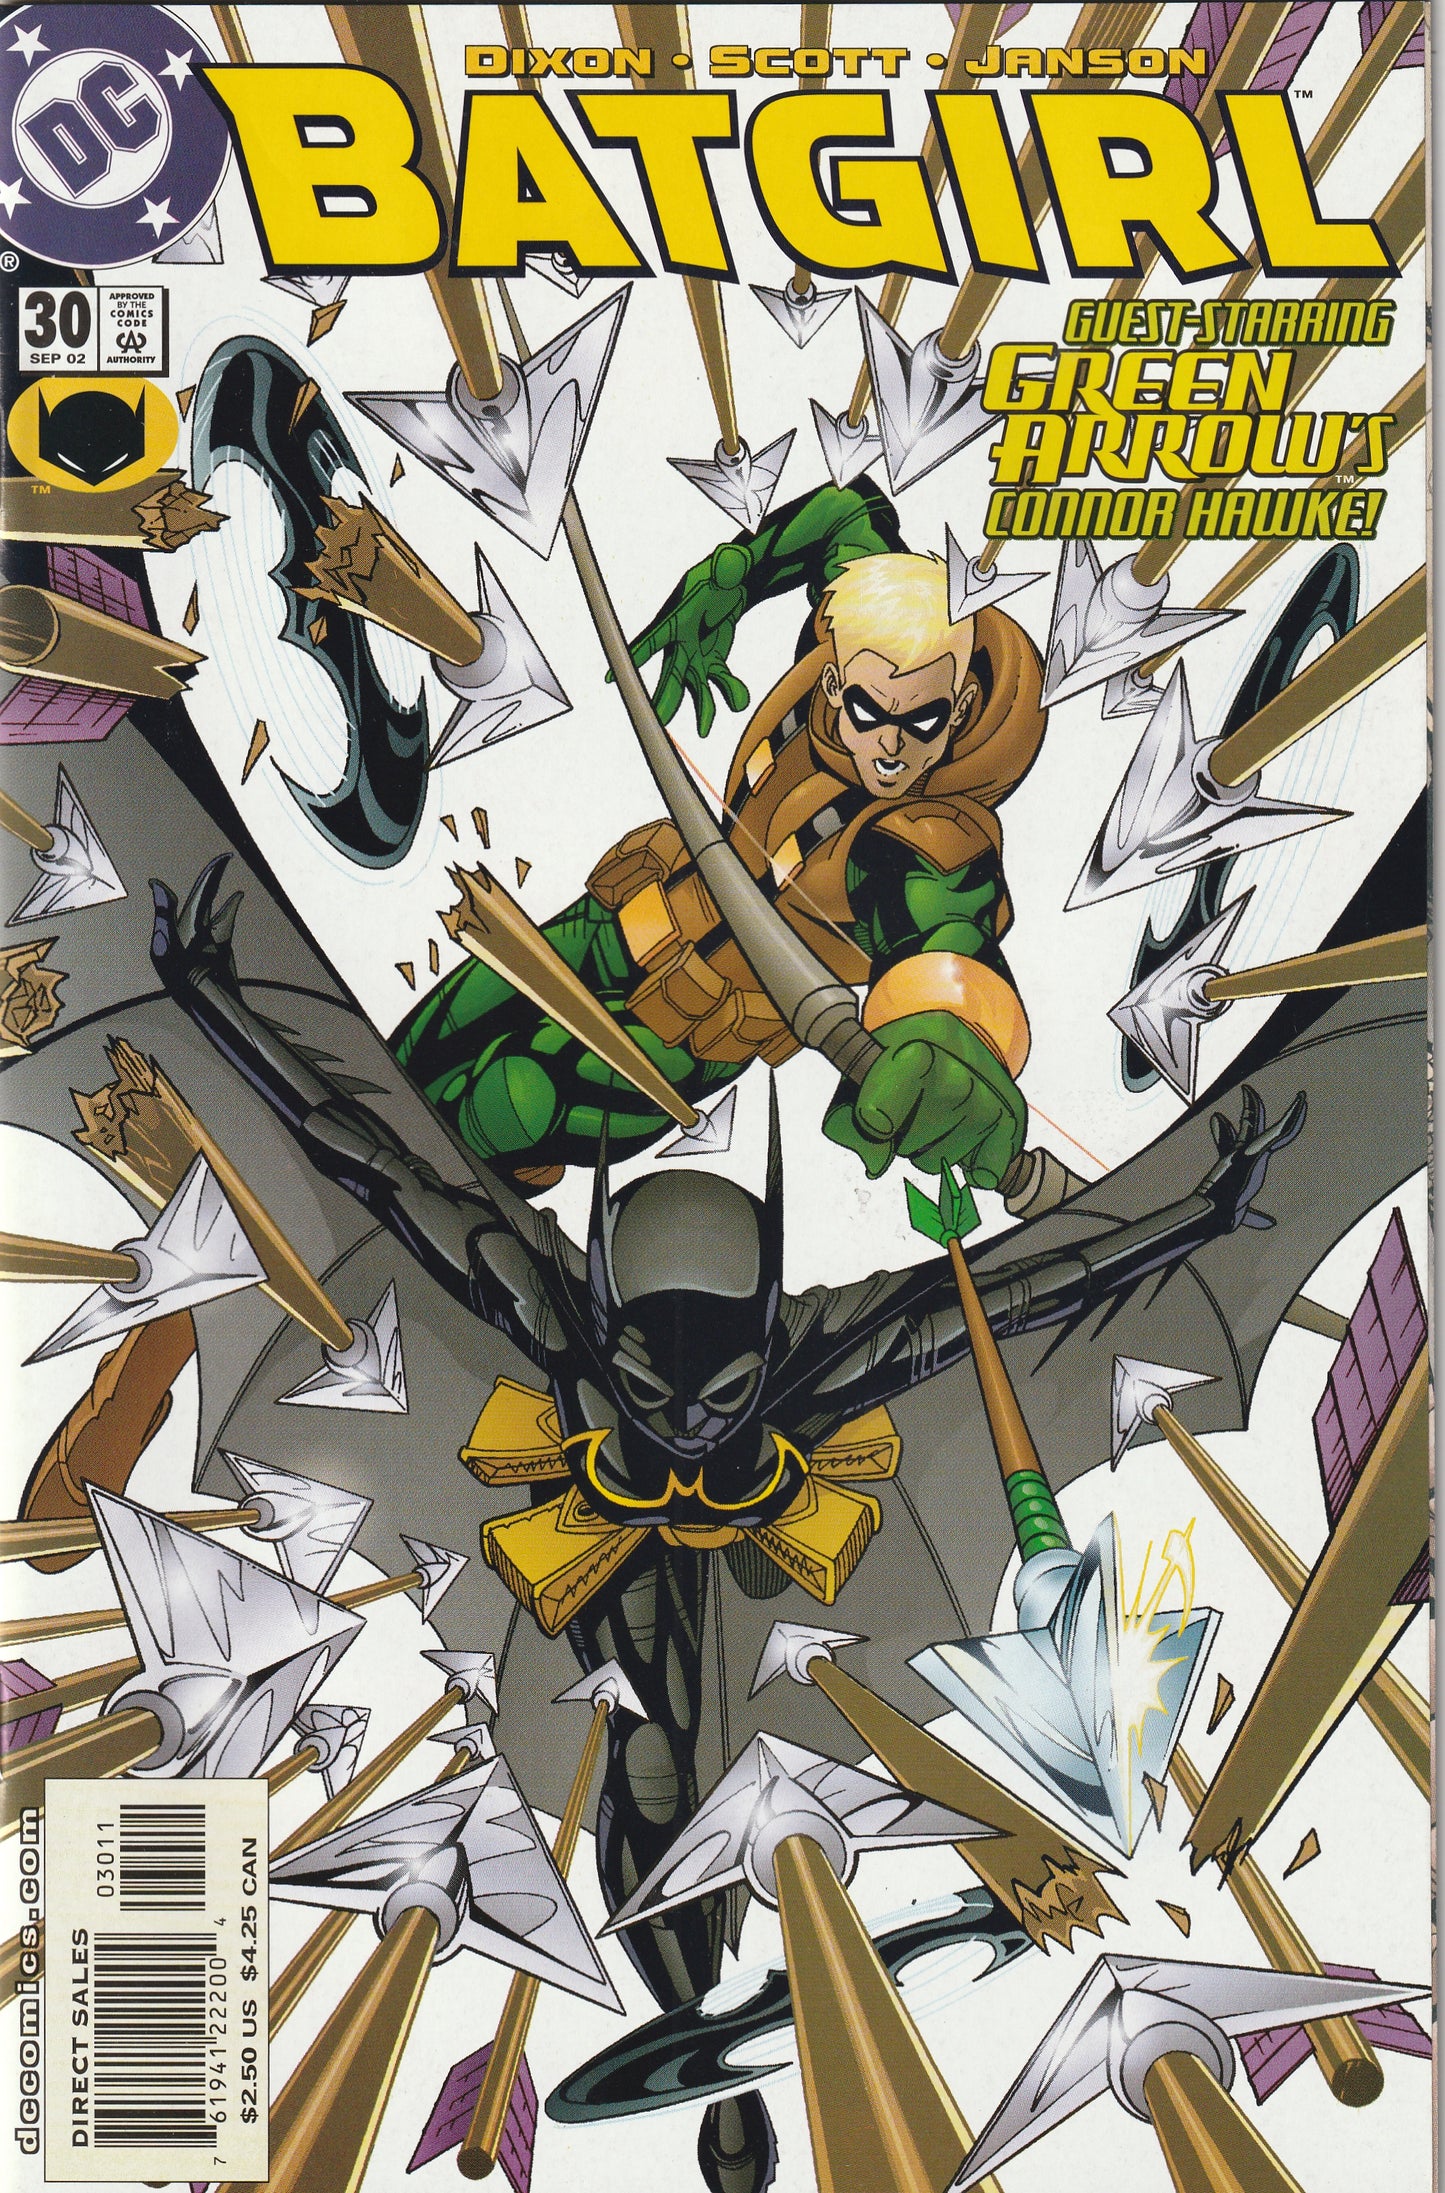 Batgirl #30 (Vol 1, 2002)